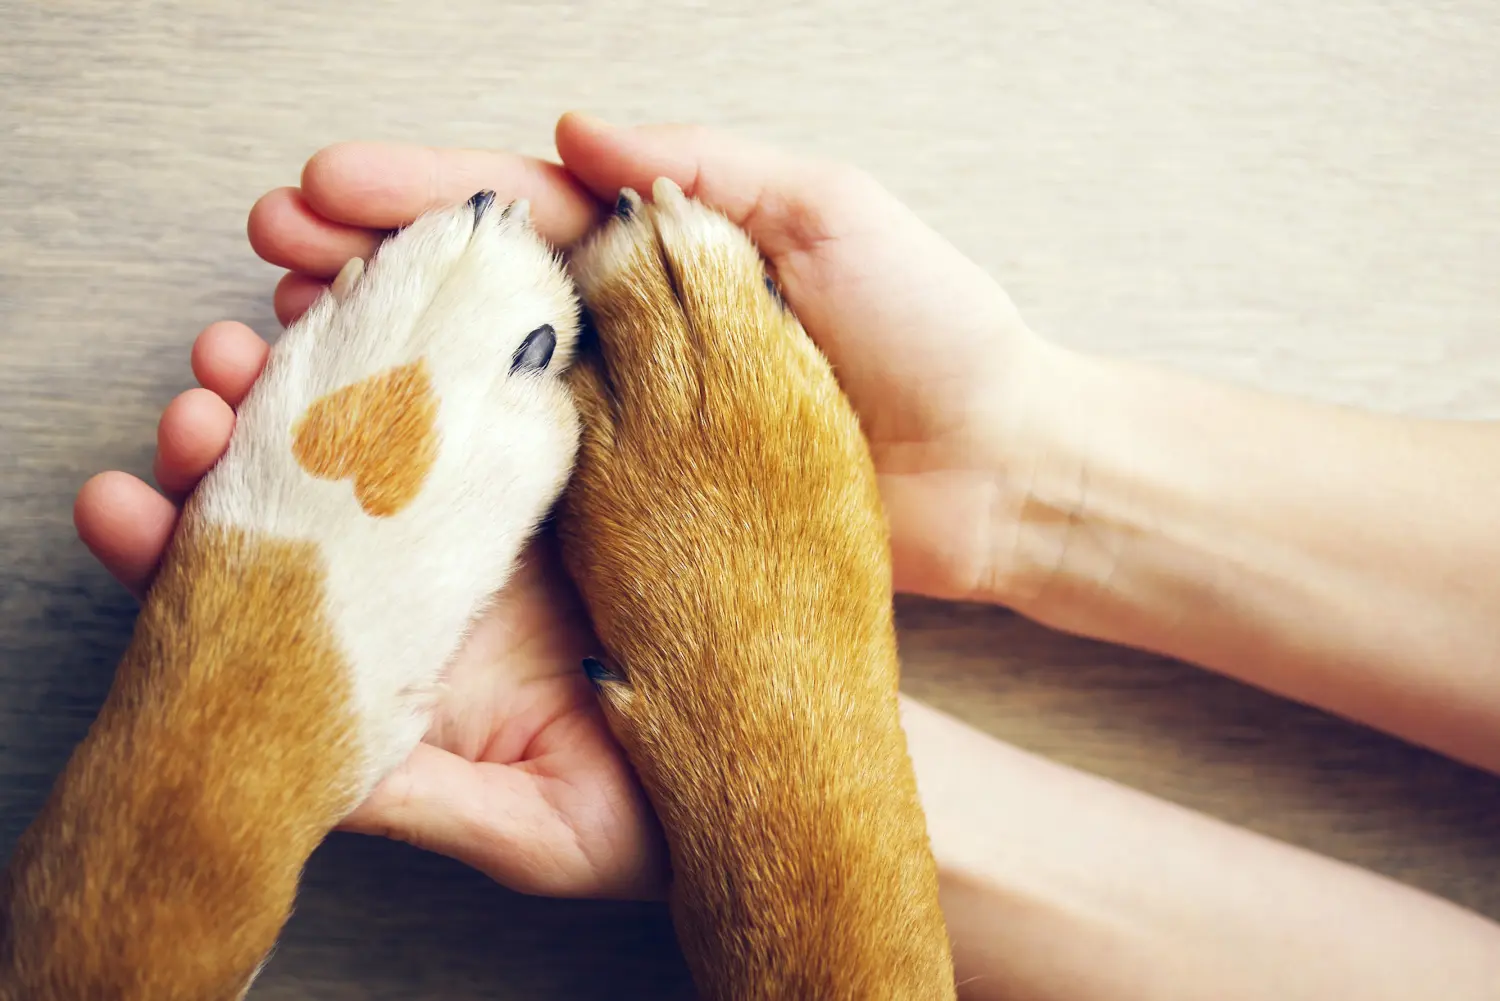 Hundepfoten mit einem Fleck in Form eines Herzens und einer menschlichen Hand in Großaufnahme, Draufsicht.